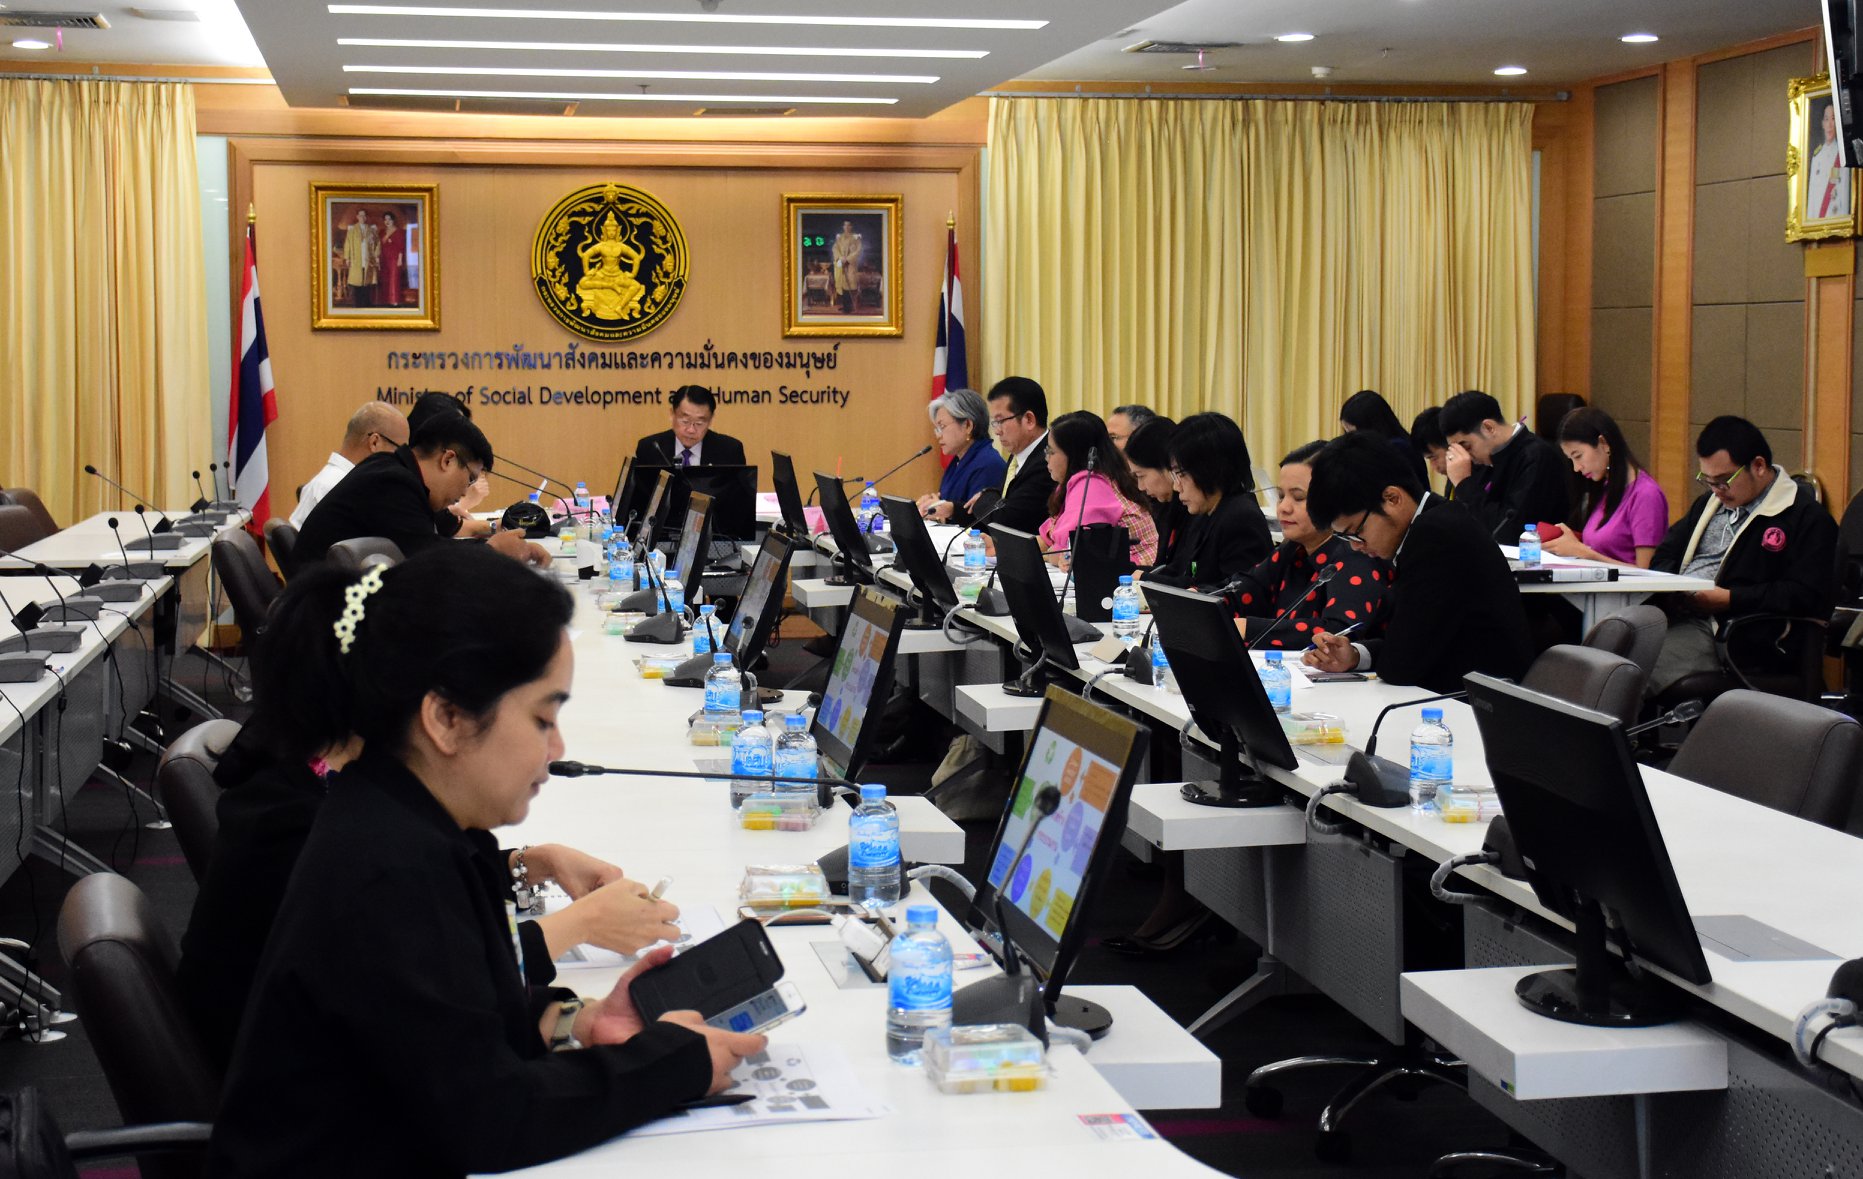 ประชุม Conference ชี้แจงโครงการ Flagship Social Smart City และโครงการสังคมไทยไร้ความรุนแรง ร่วมกับสำนักงานพัฒนาสังคมและความมั่นคงของมนุษย์จังหวัด 